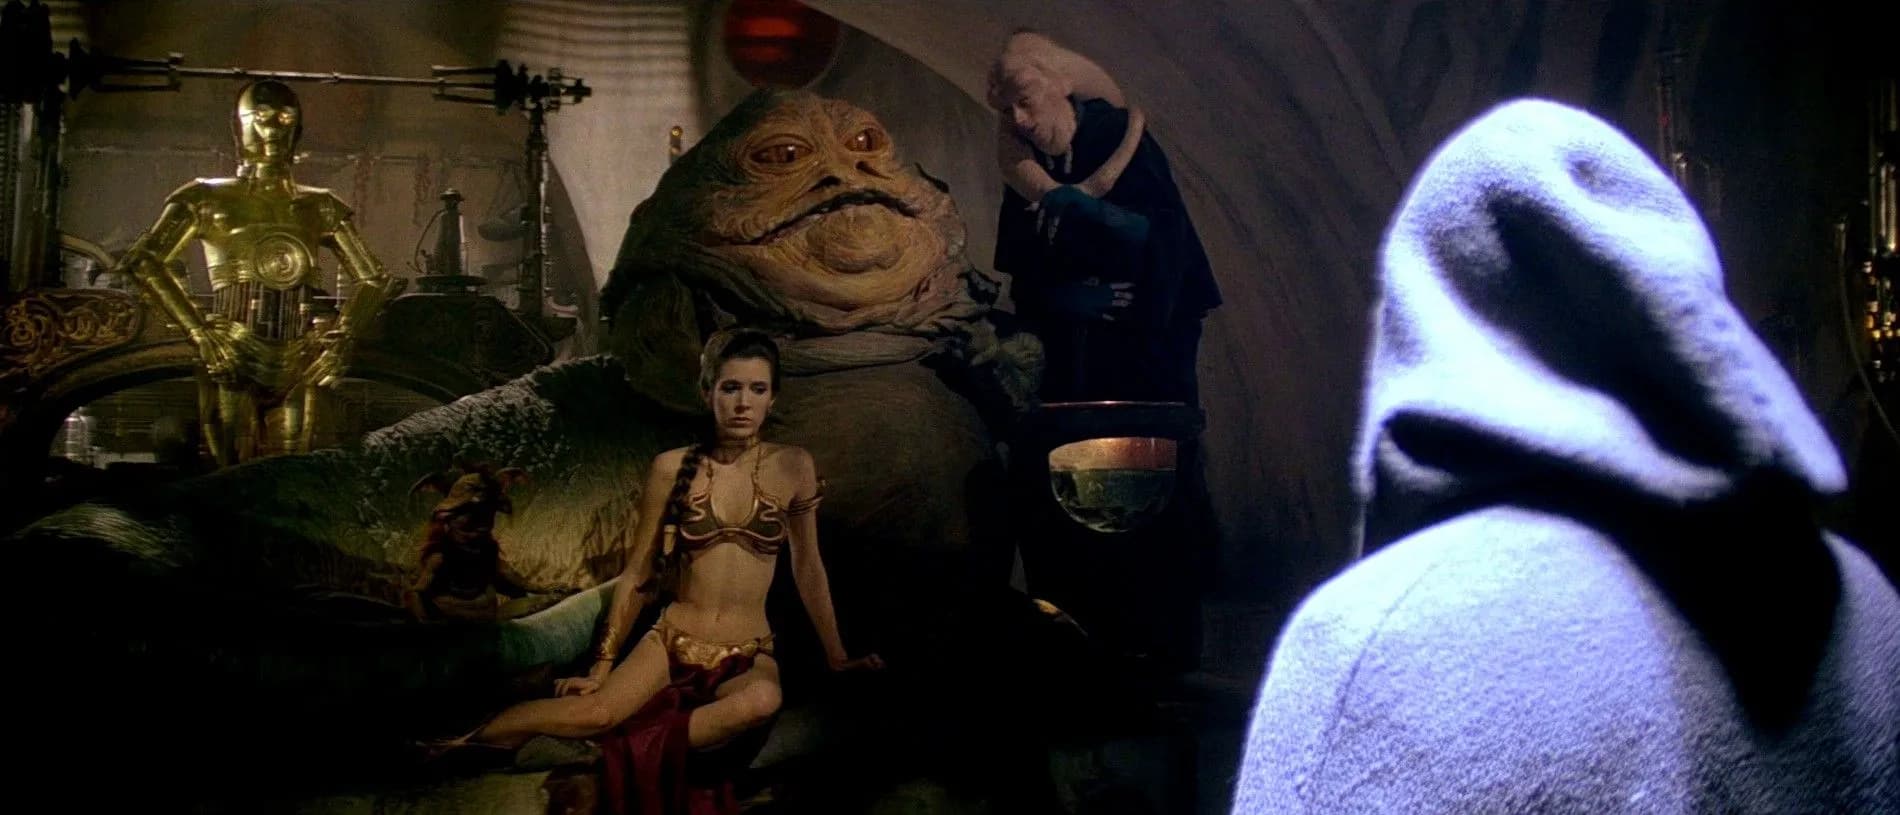 La Princesse Leia, prisonnière de Jabba the Hutt